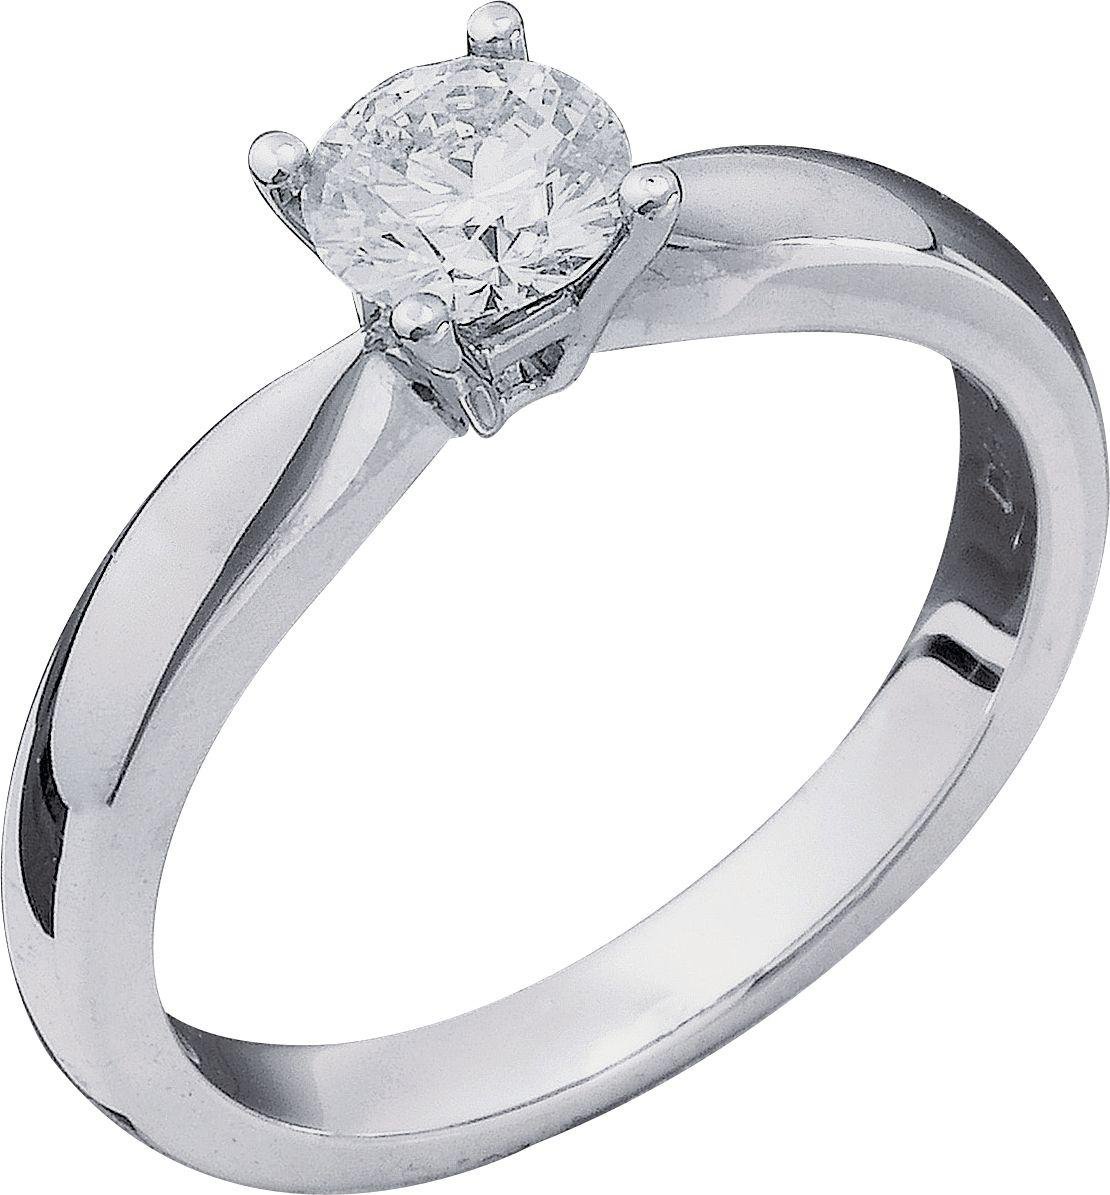 Everlasting Love 18ct White Gold 0.50ct Diamond Ring - M